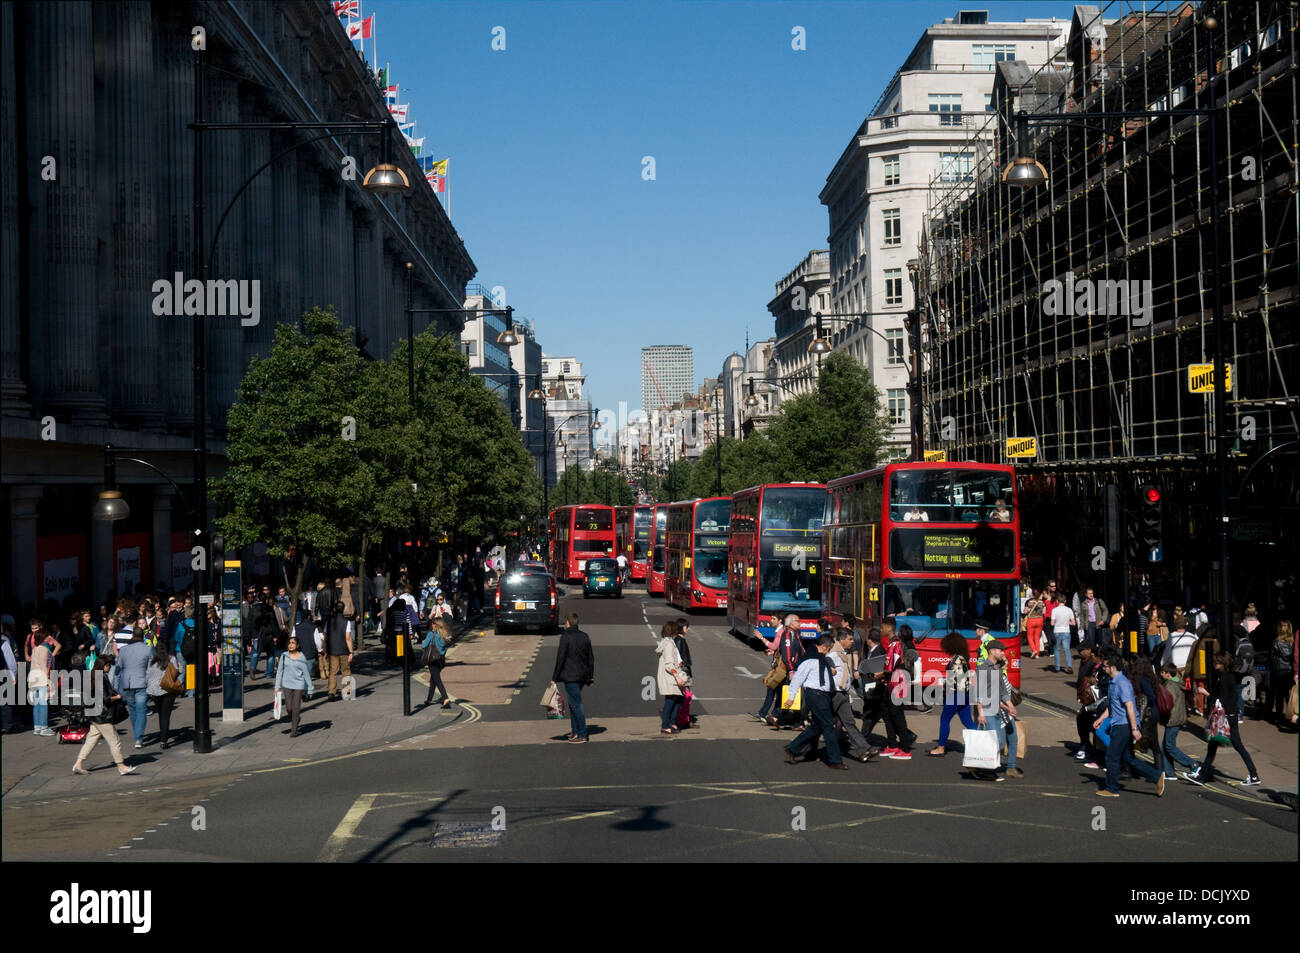 Tourist, Einkäufer und Arbeitnehmer überqueren Oxford Street in London an einem sonnigen Tag. Eine Reihe von Busse fahren auf der Straße. Stockfoto